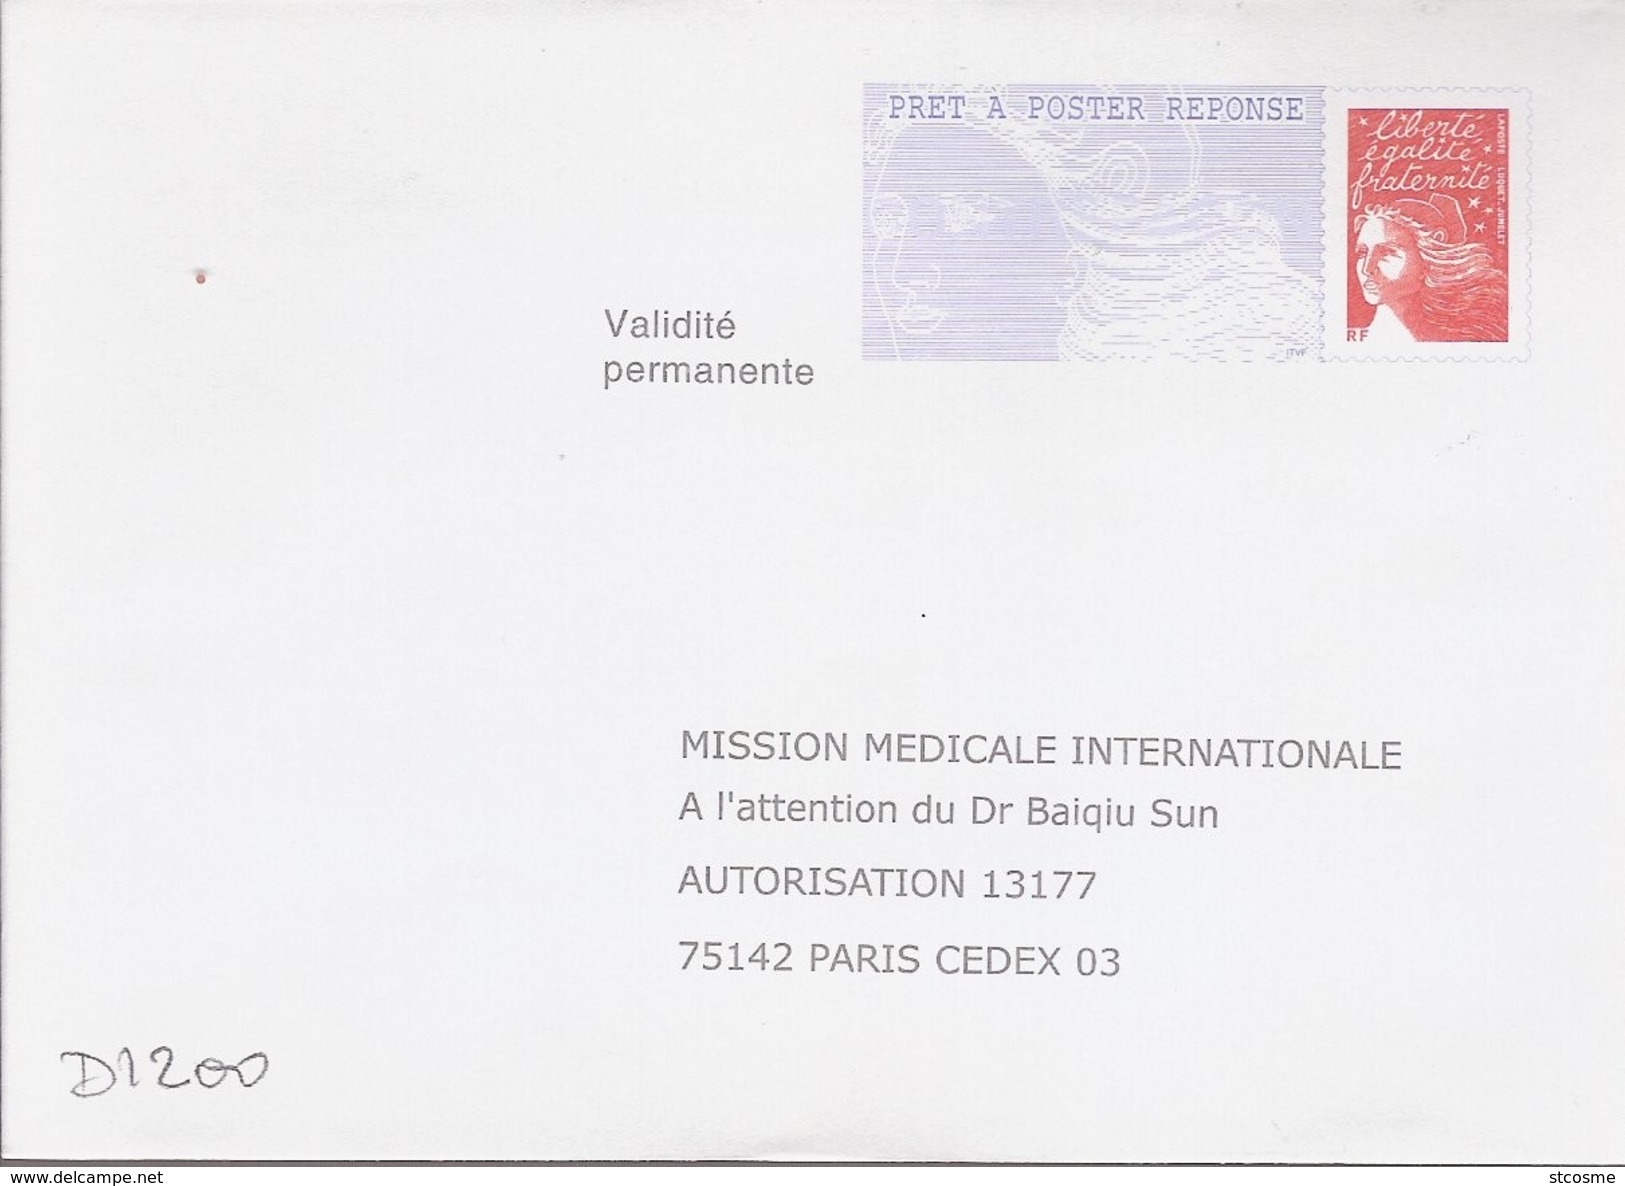 D1200 Entier / Stationery / PSE - PAP Réponse Luquet - Mission Médicale Internationale - N° D'agrément 0204500 - PAP: Ristampa/Luquet